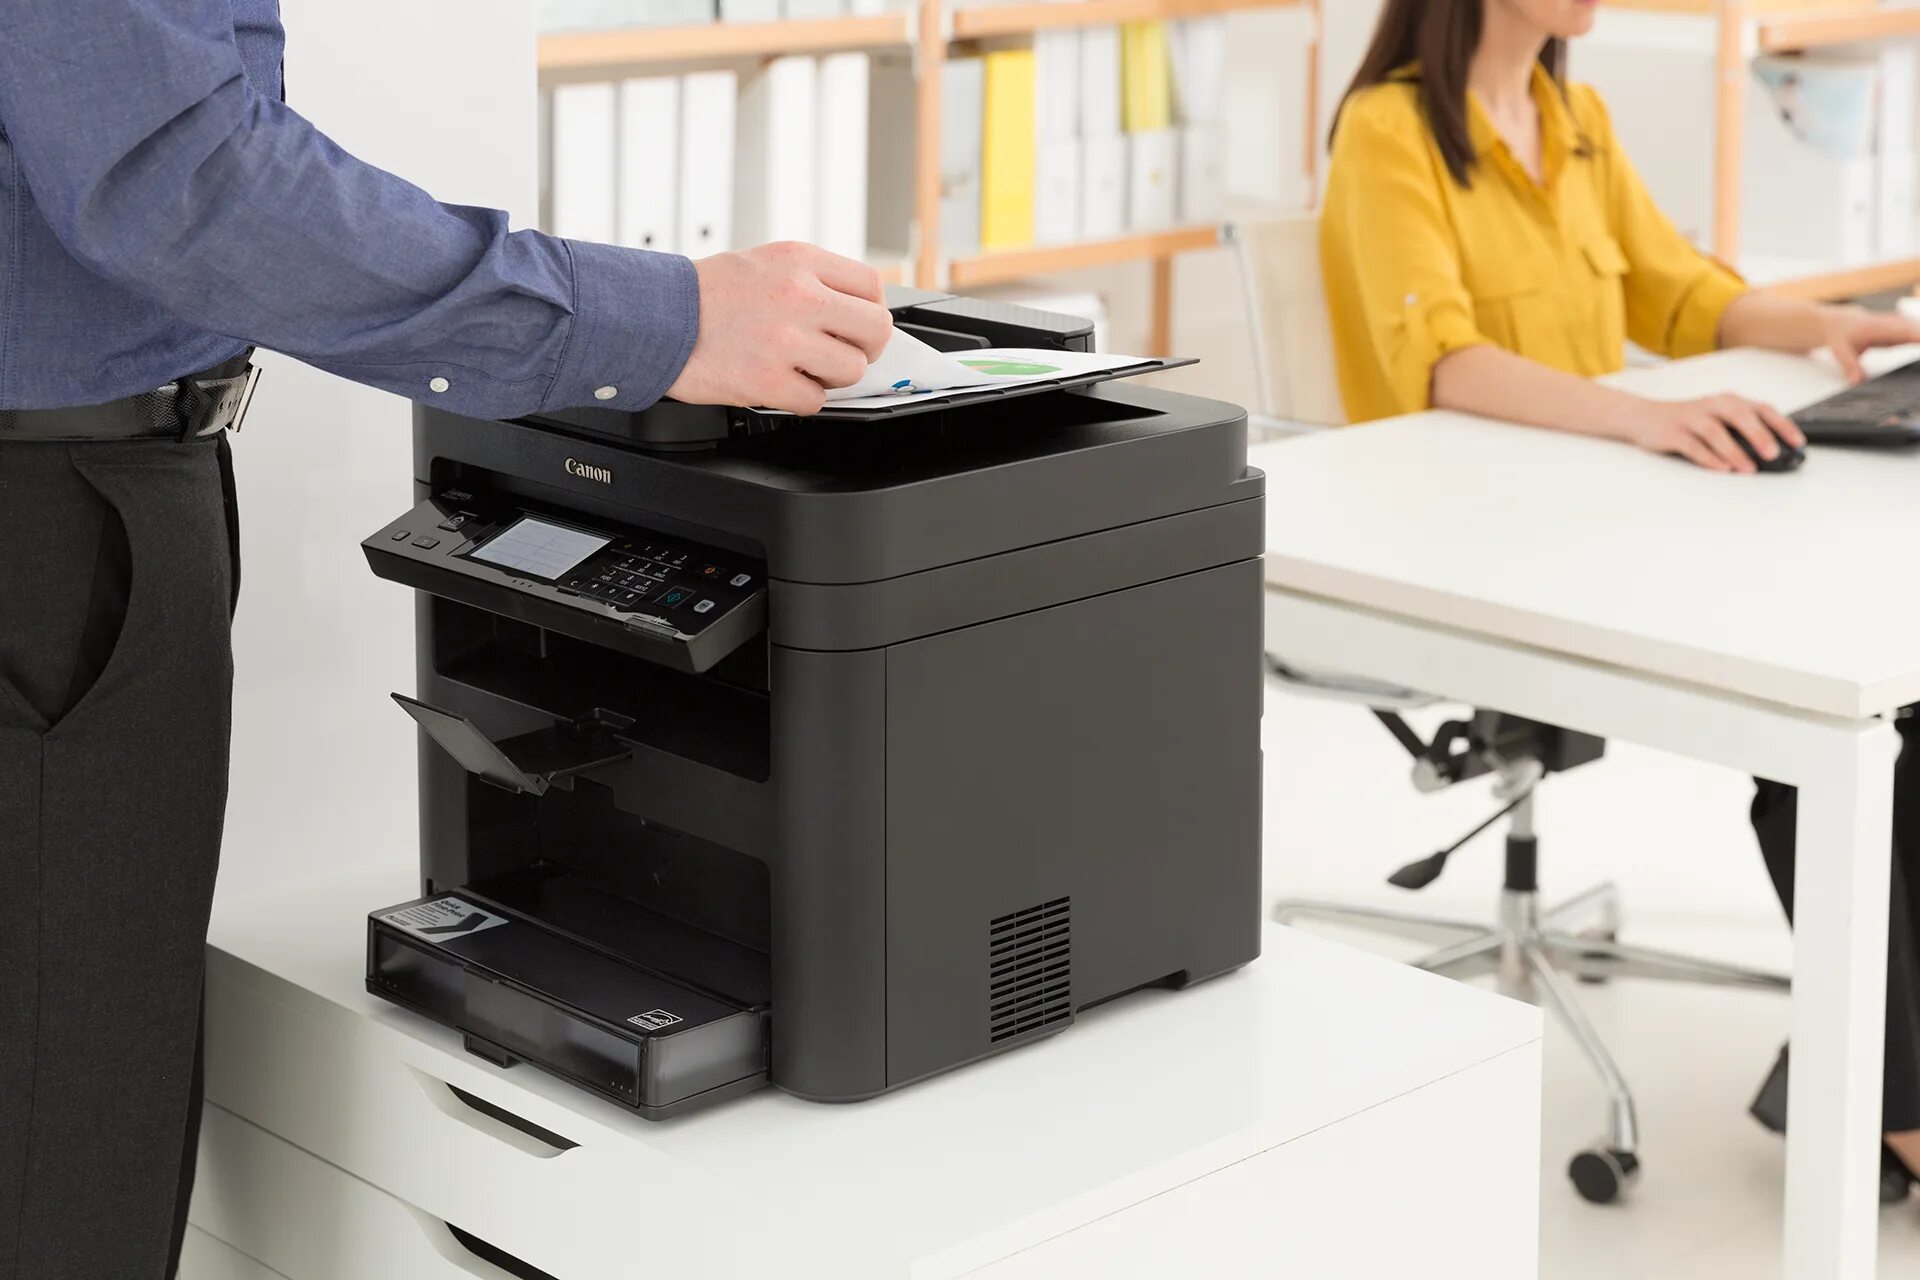 Принтер в офисе. Принтер МФУ для офиса. Копировальные аппараты для офиса. Лазерный принтер в офисе. Принтер копир для офиса